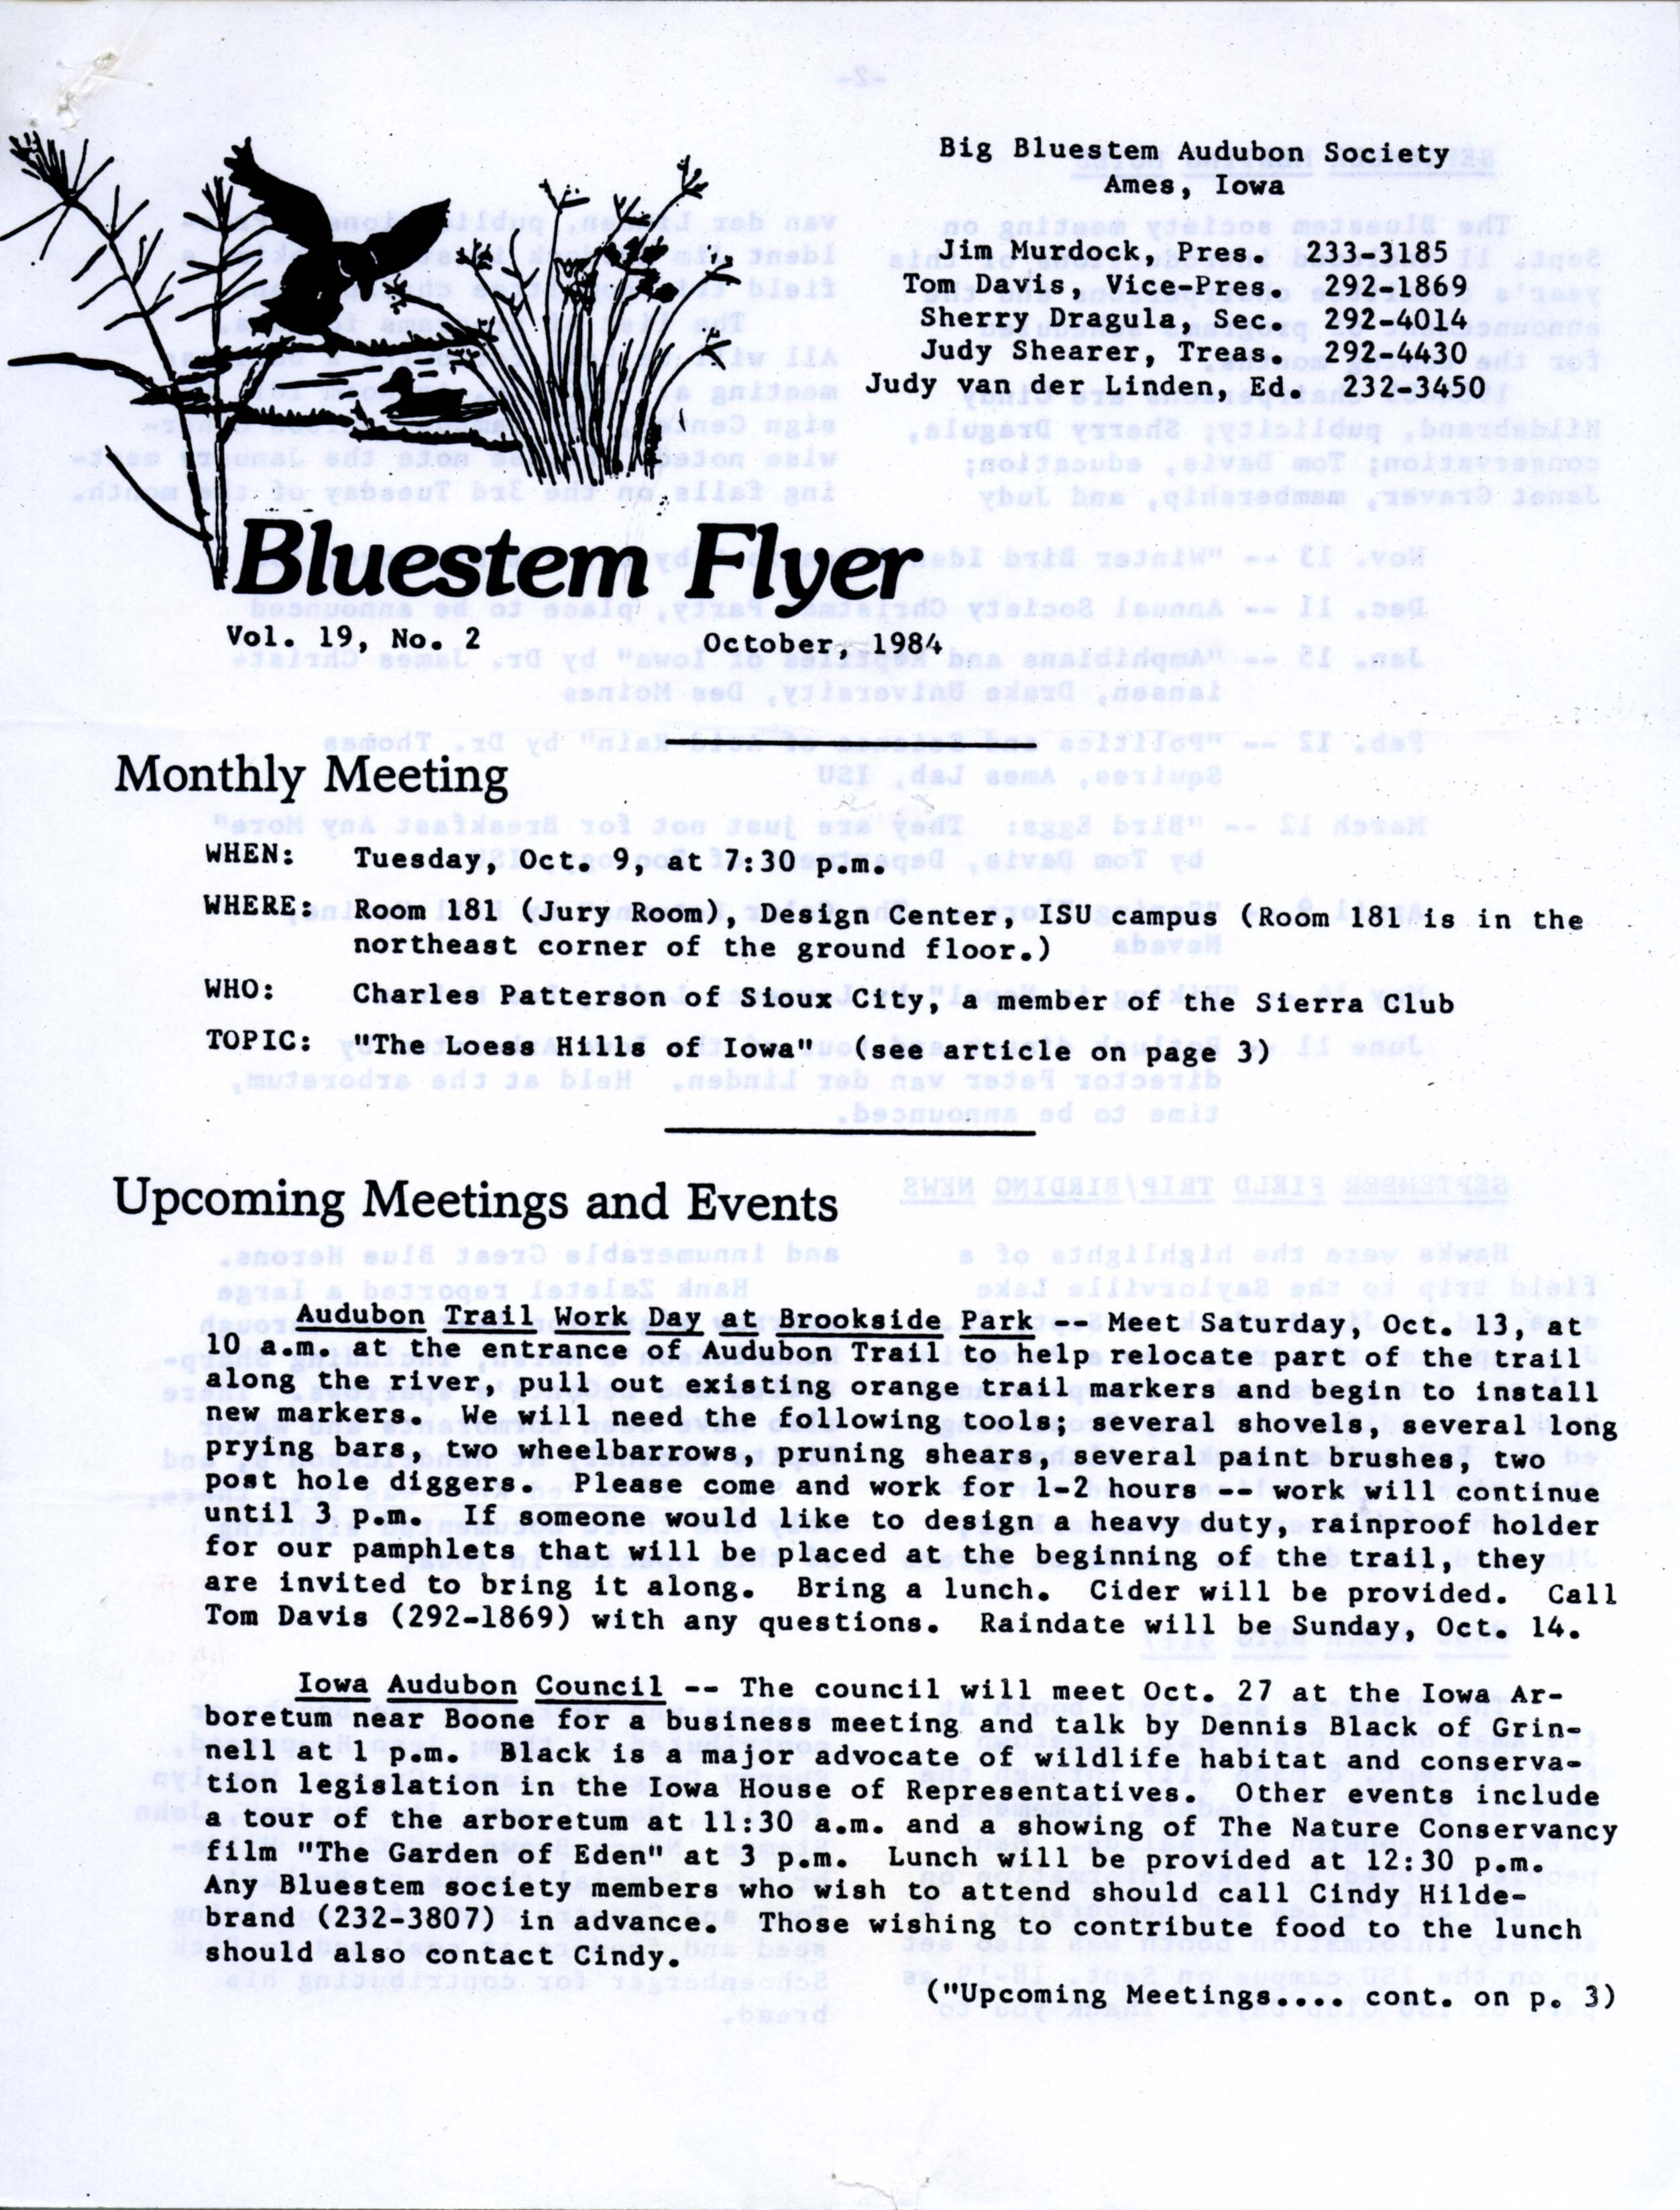 Bluestem Flyer, Volume 19, Number 2, October 1984